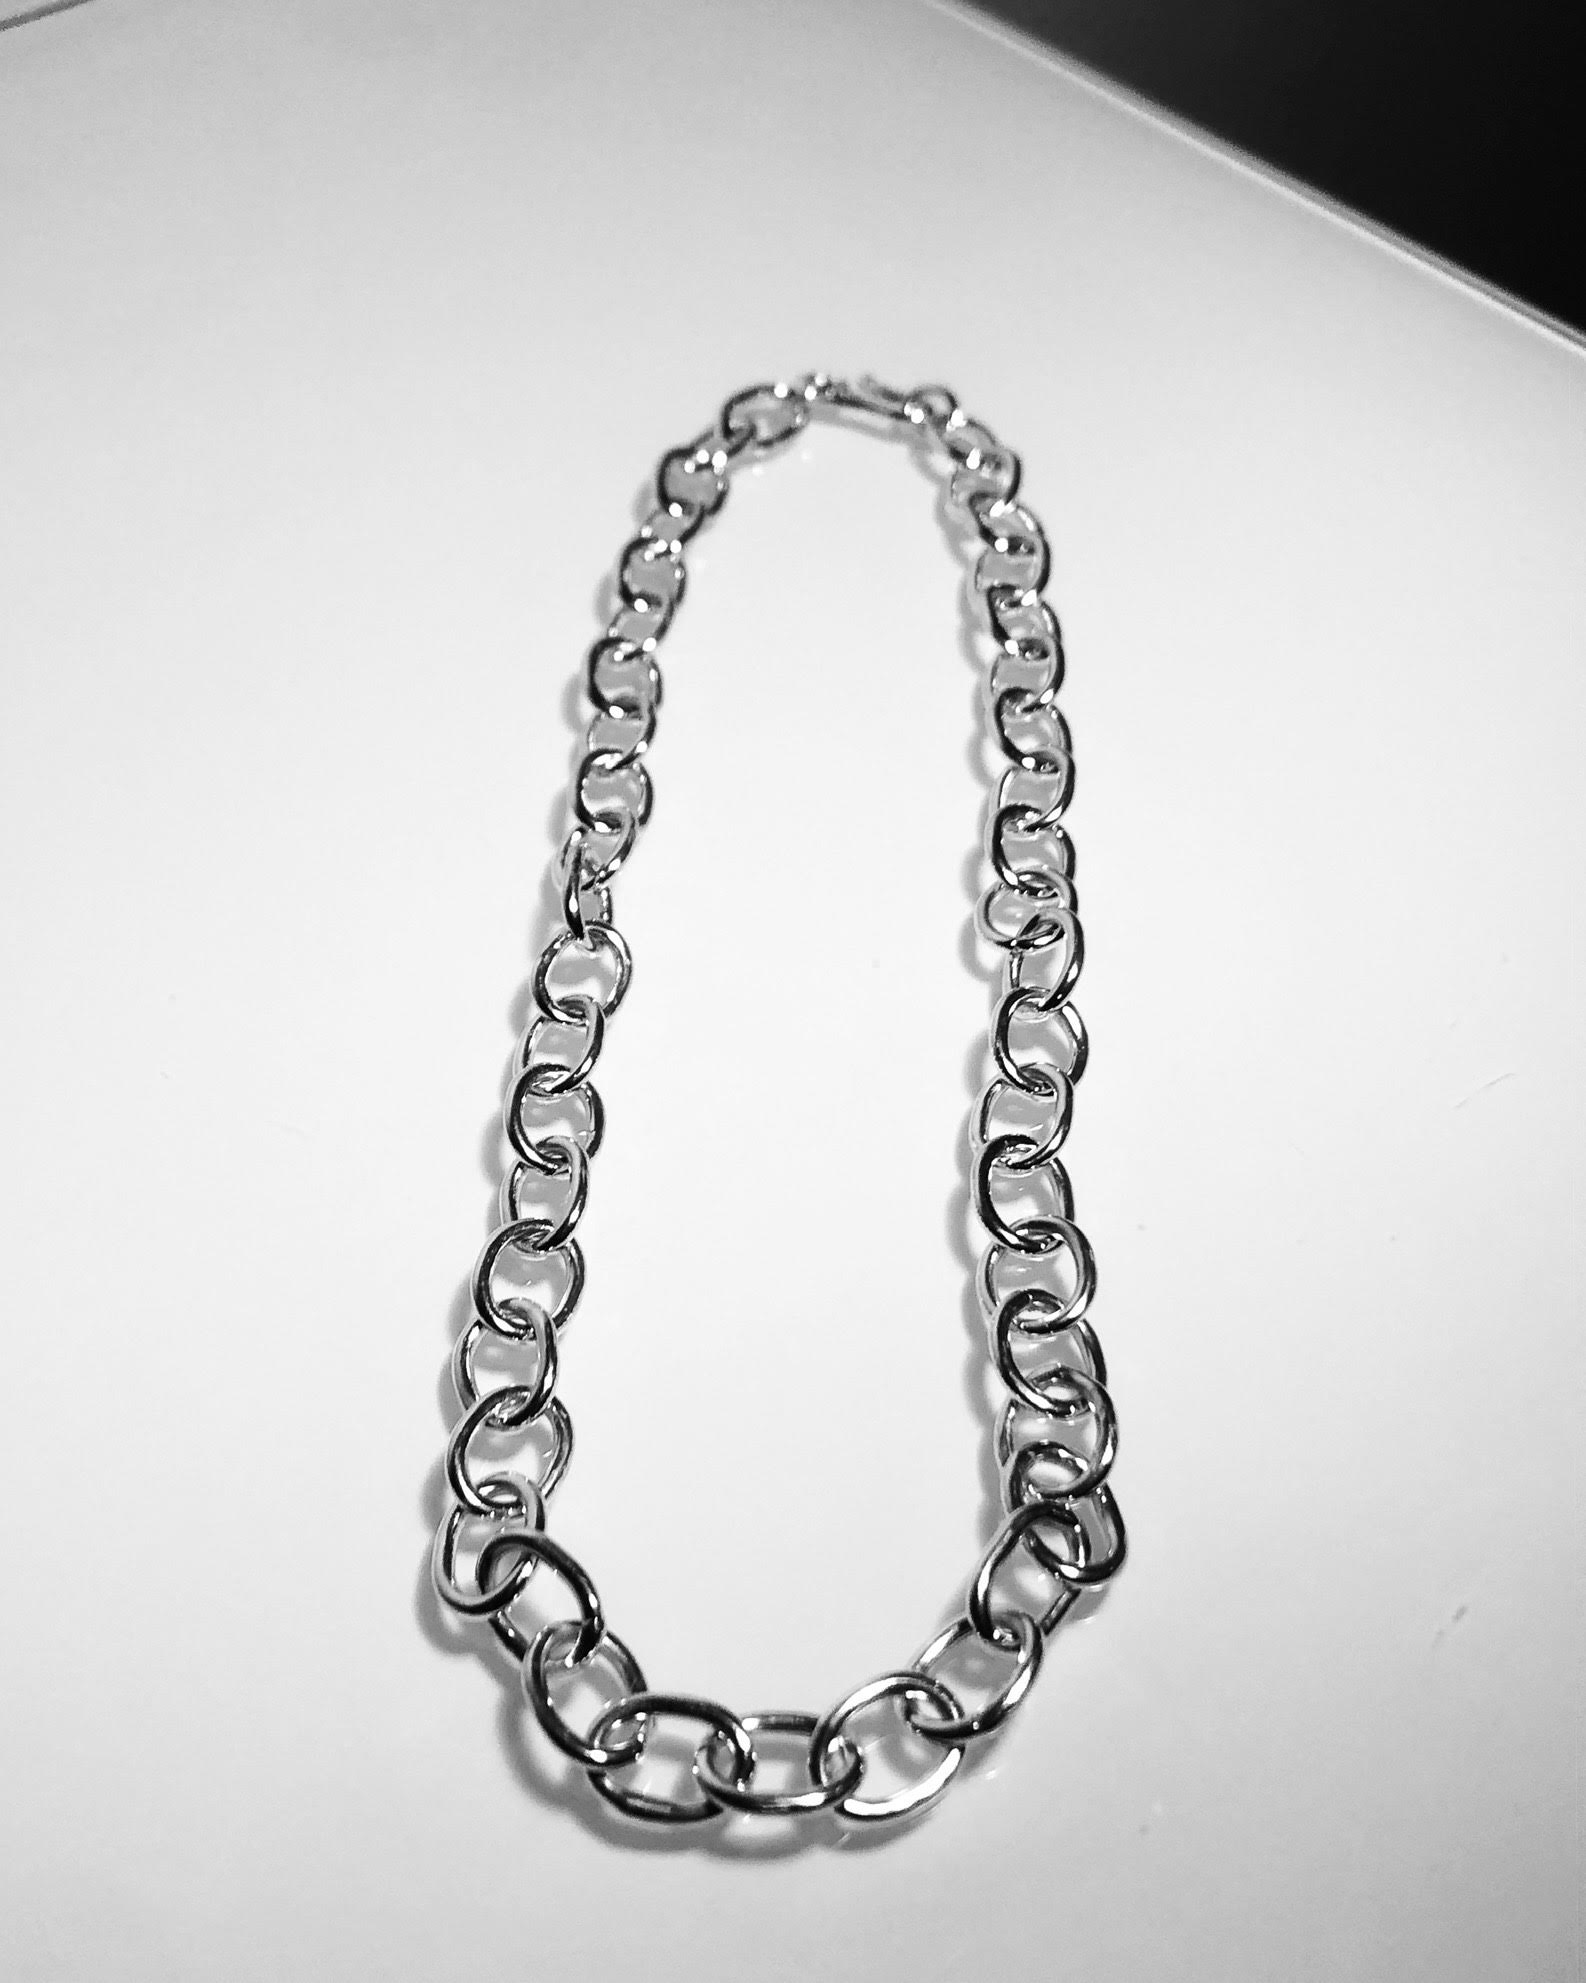 PLAIN CHAIN -  Halskedja i silver med ovala, lödda länkar och handgjort lås.